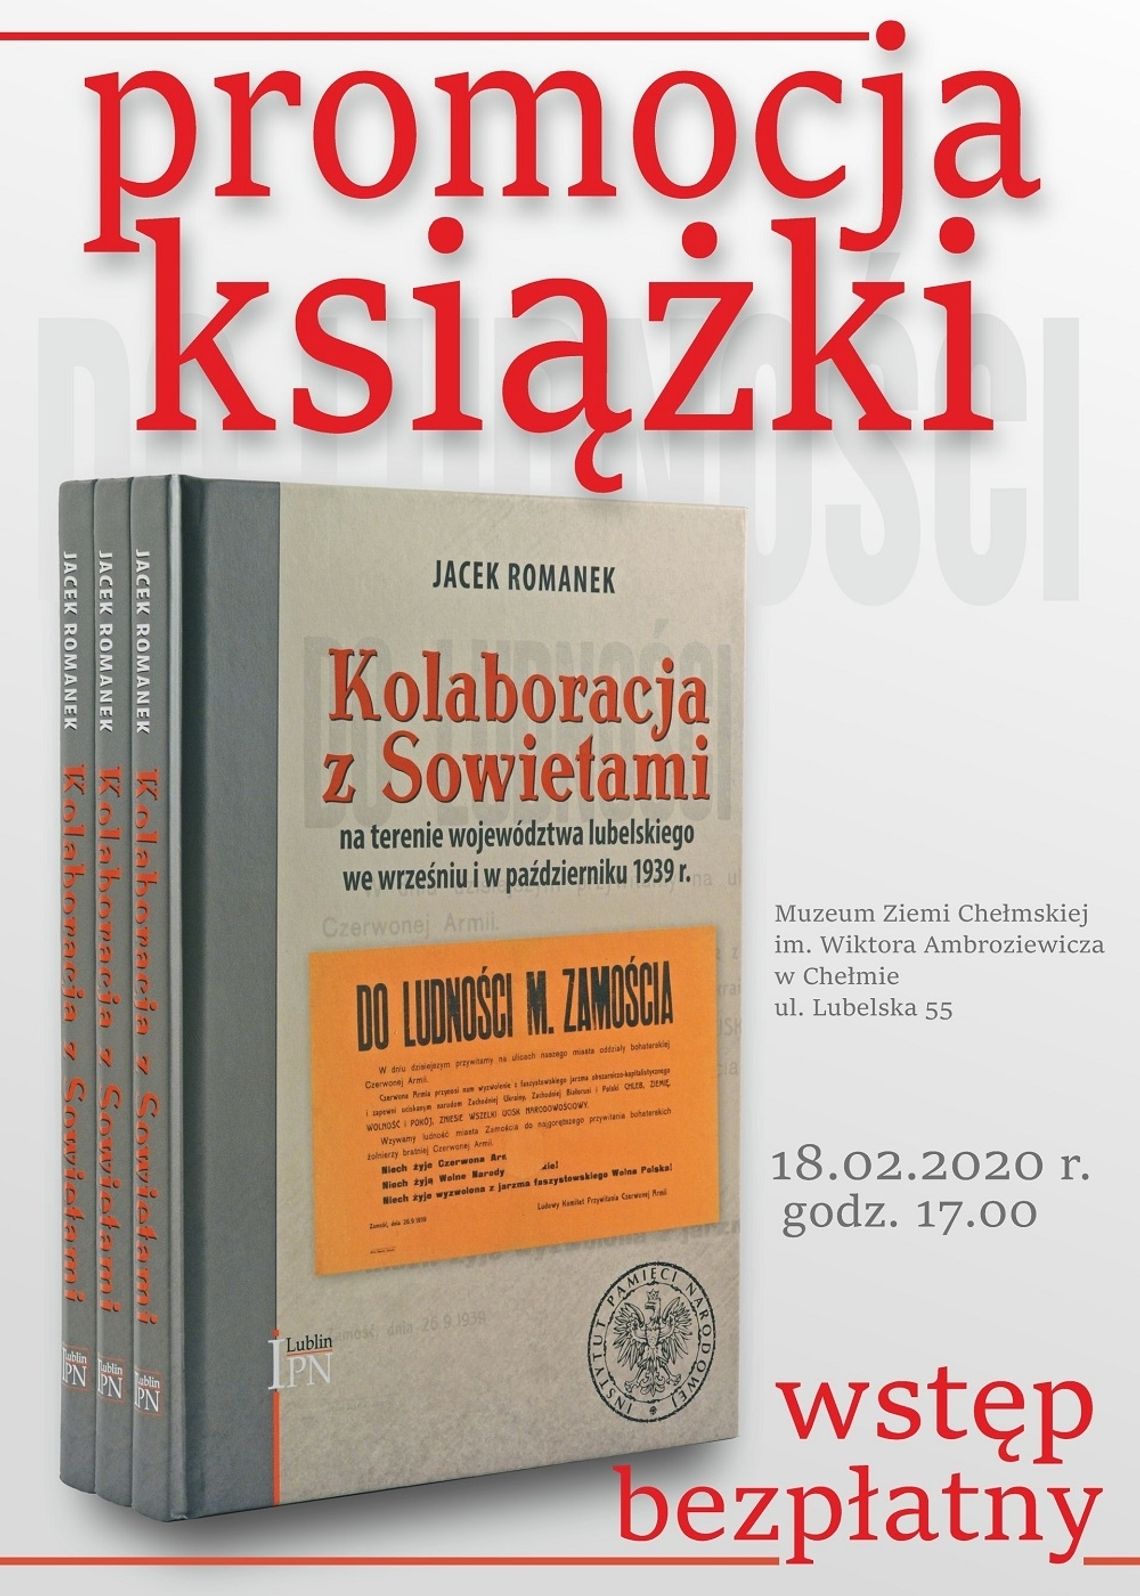 Kolaboracja z Sowietami... - promocja książki w Muzeum Ziemi Chełmskiej